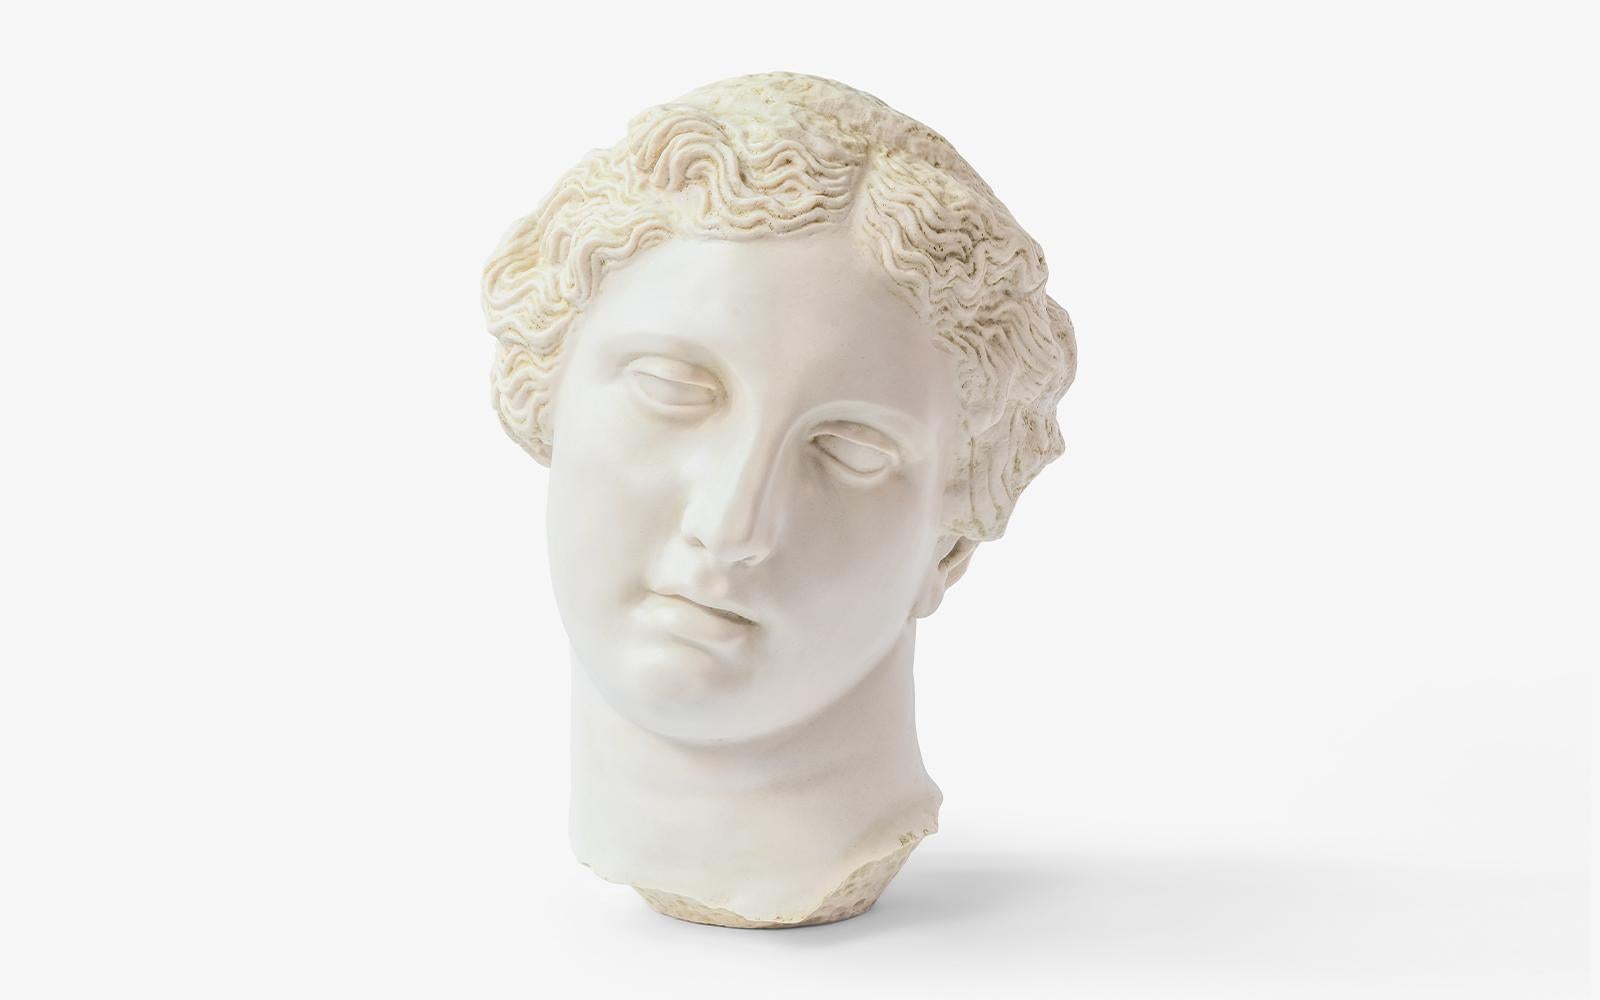 Sculpture du buste d'Apollon par Lagu
Conçu par Ufuk Ceylan
Dimensions : L 44 x P 35 x H 58 cm.
Matériaux : Marbre statuaire, coulé.

Apollo est connu comme le dieu de la musique, de l'art, du soleil, du feu et de la poésie dans la mythologie